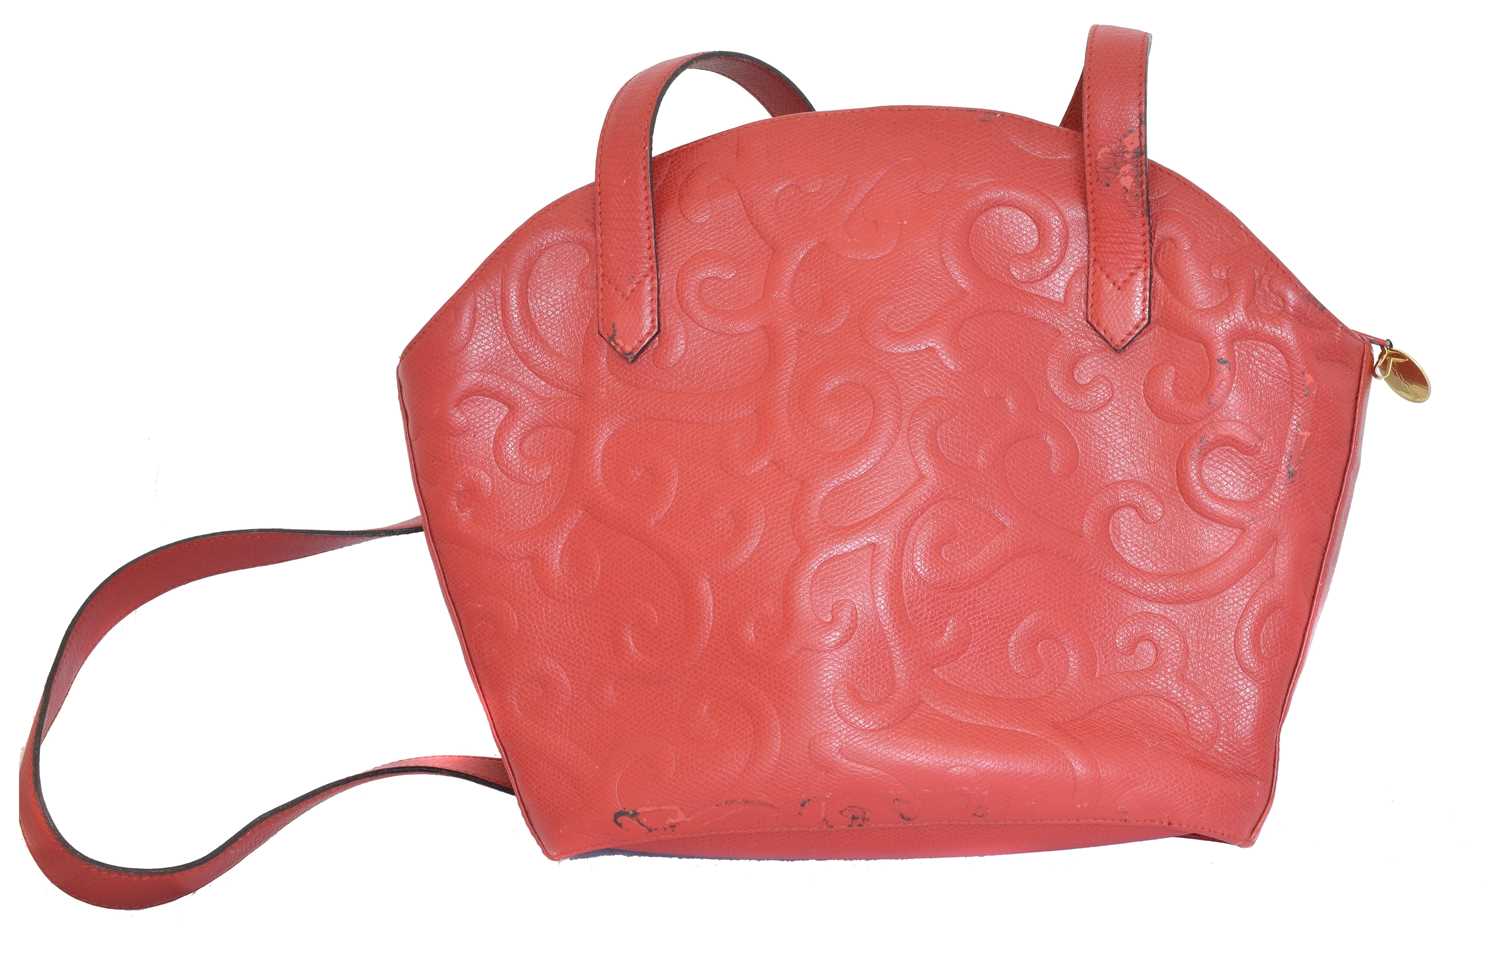 A Yves Saint Laurent shoulder bag, - Image 2 of 2